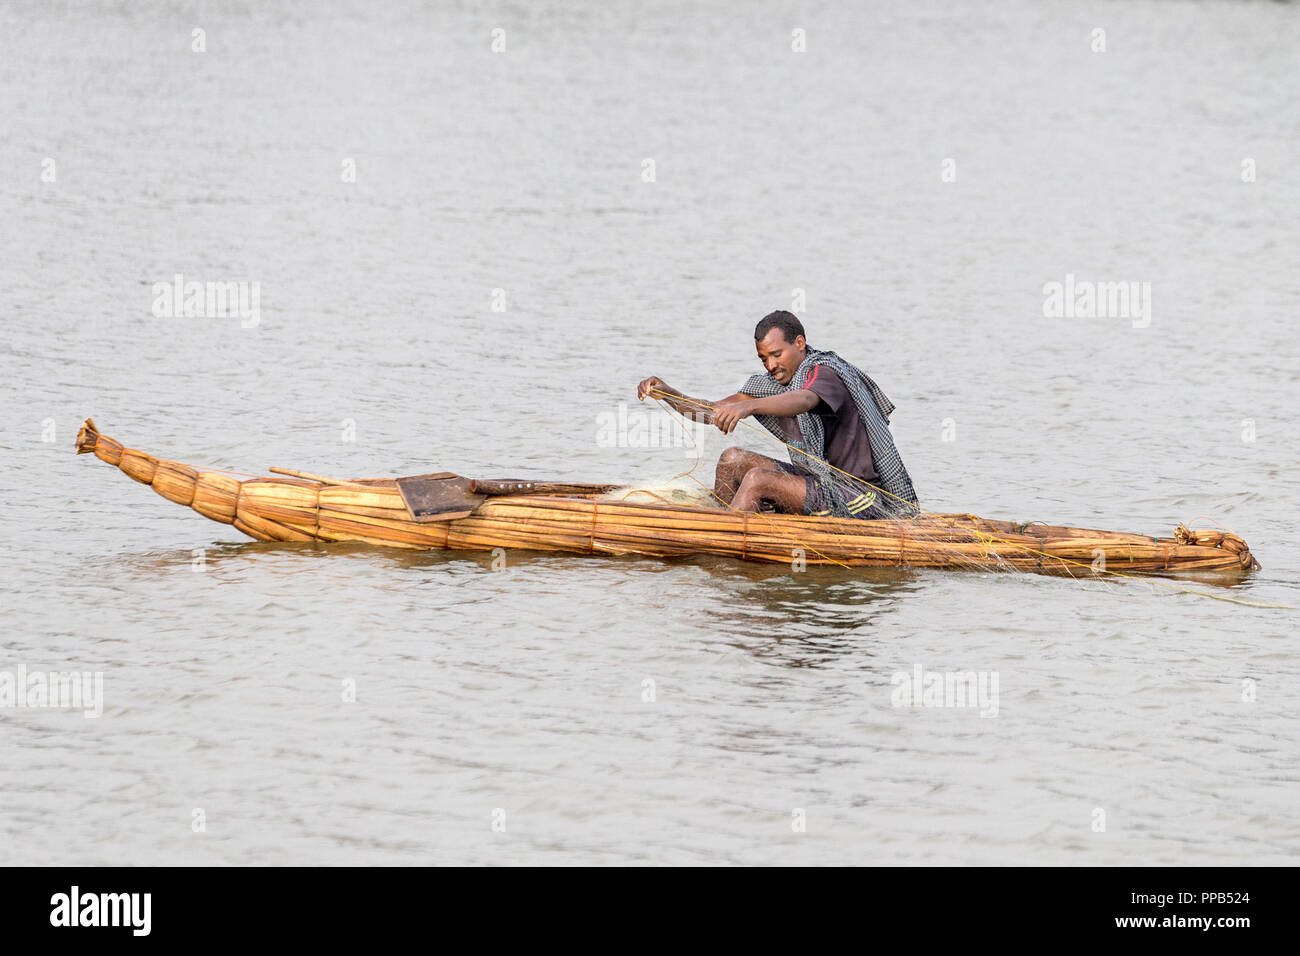 Fisherman in papyrus boat, Lake Tana, Bahir Dar, Ethiopia Stock Photo